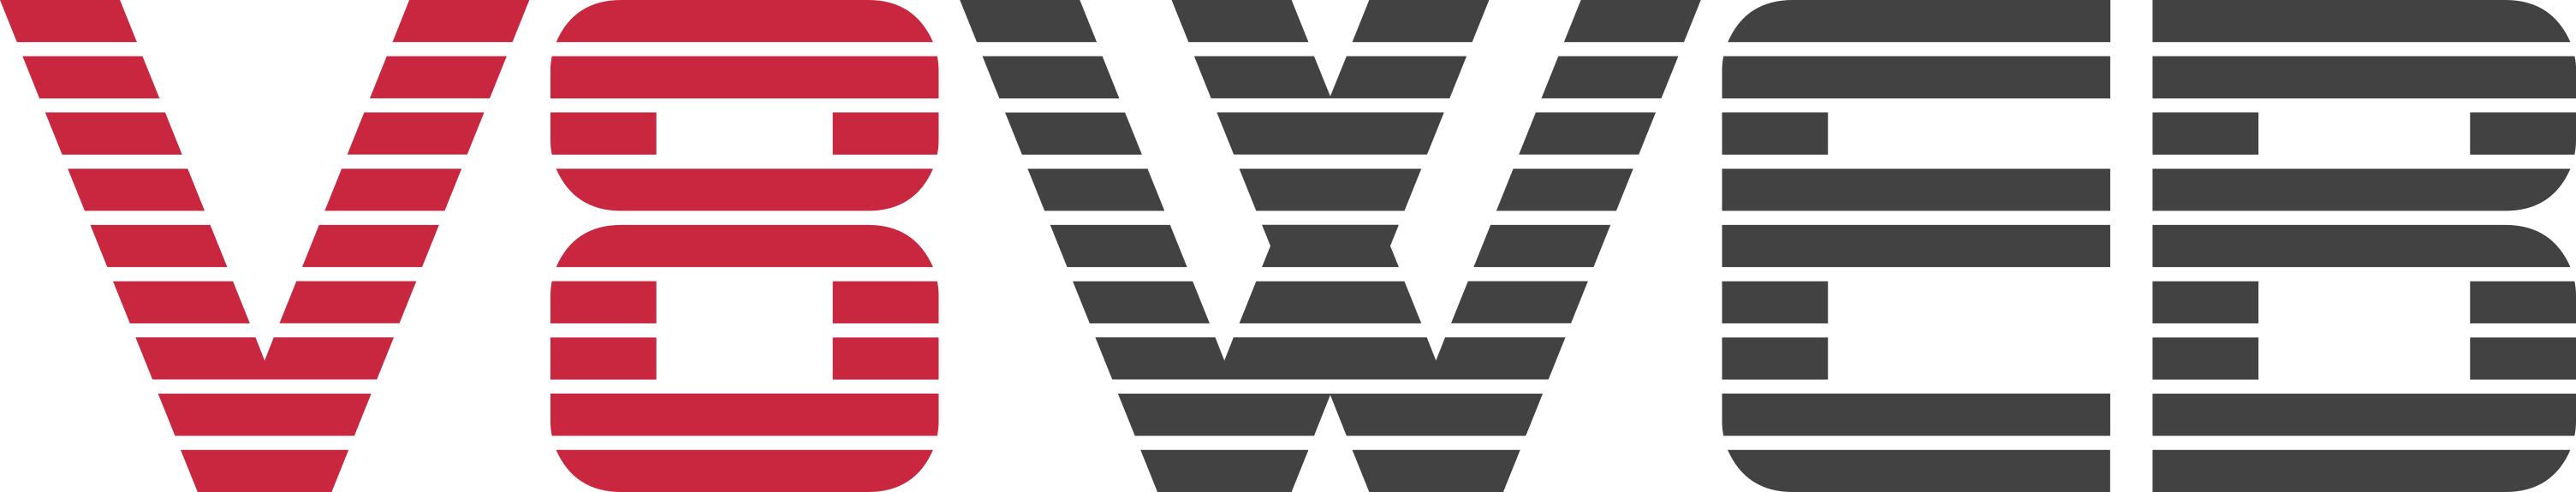 V8Web logo